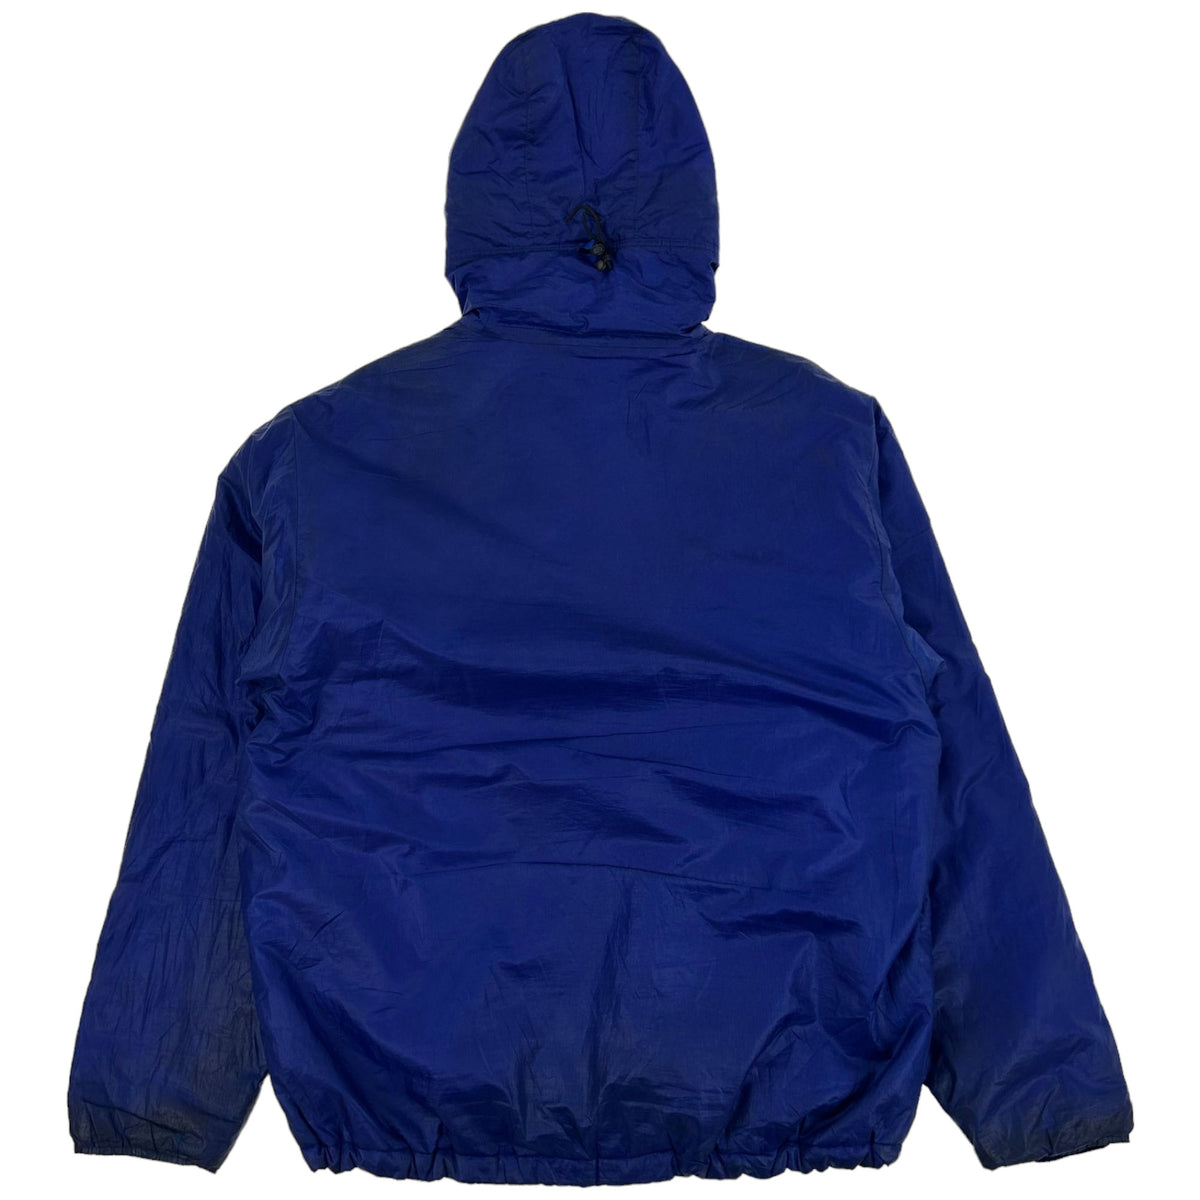 Vintage Patagonia Hooded Jacket Size L